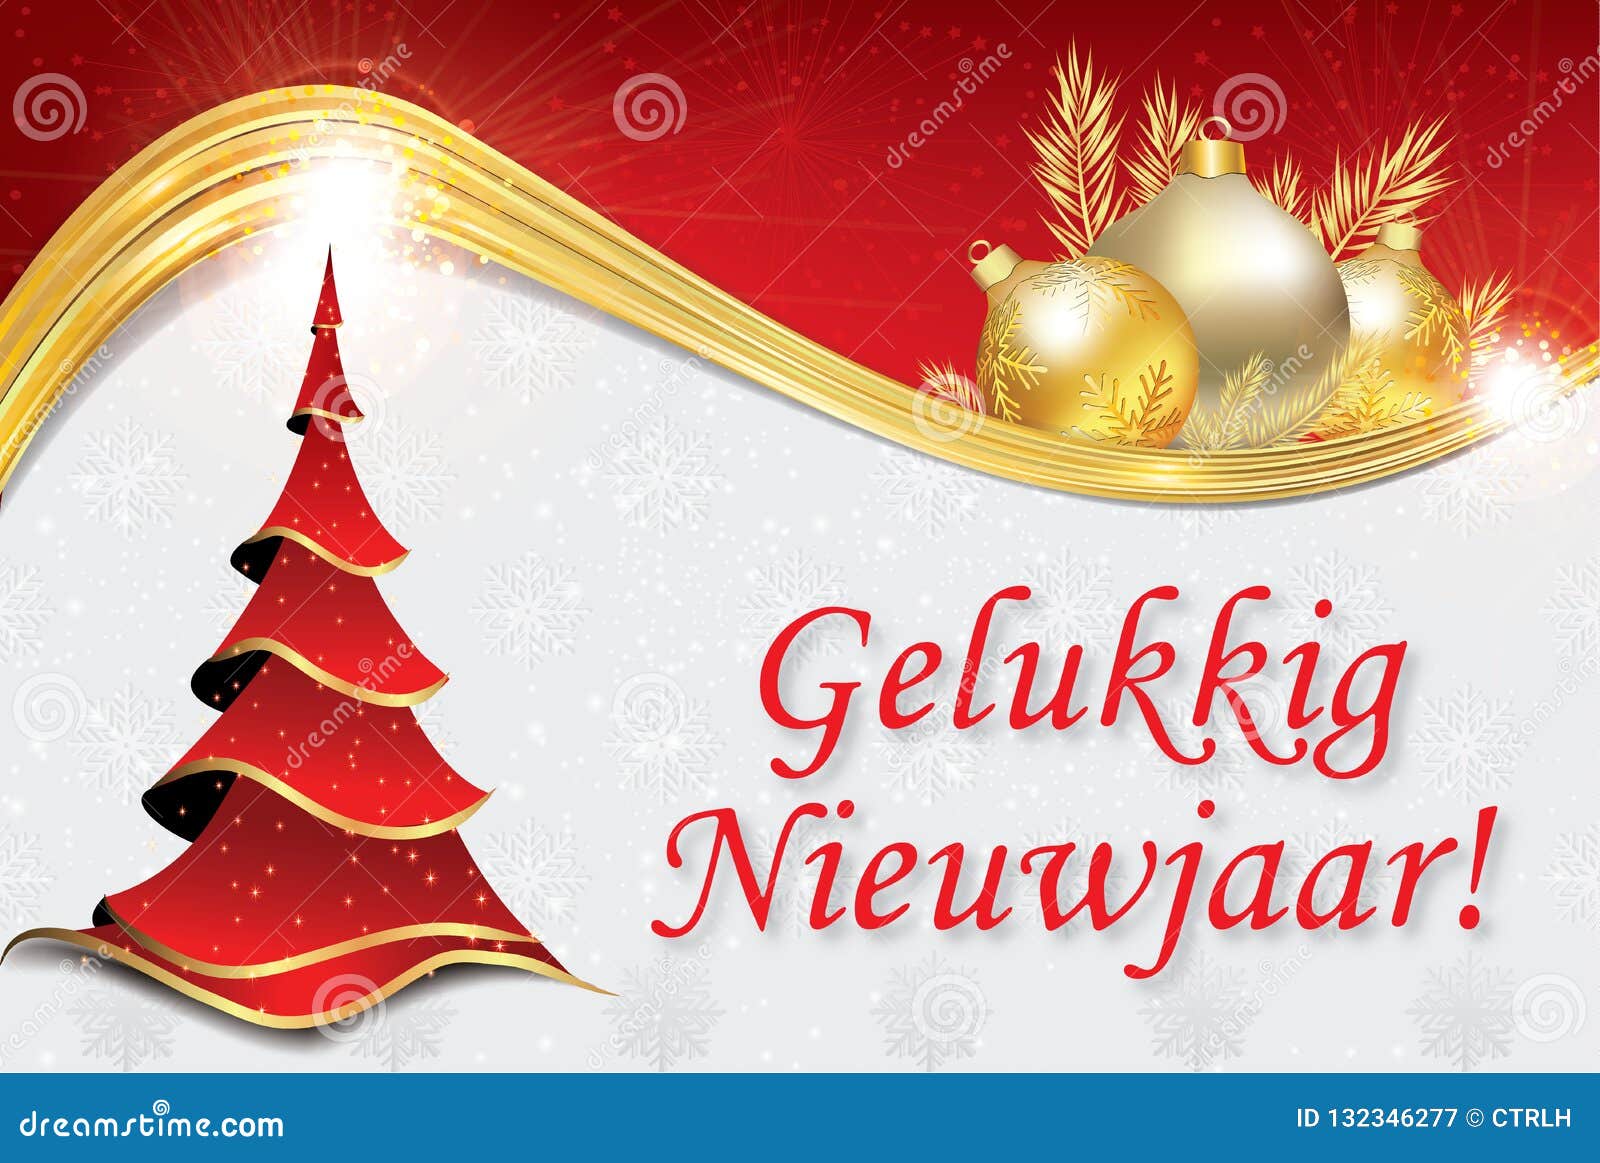 Buon Natale Olandese.Buon Anno Cartolina D Auguri Corporativa In Olandese Illustrazione Di Stock Illustrazione Di Norway Aziende 132346277